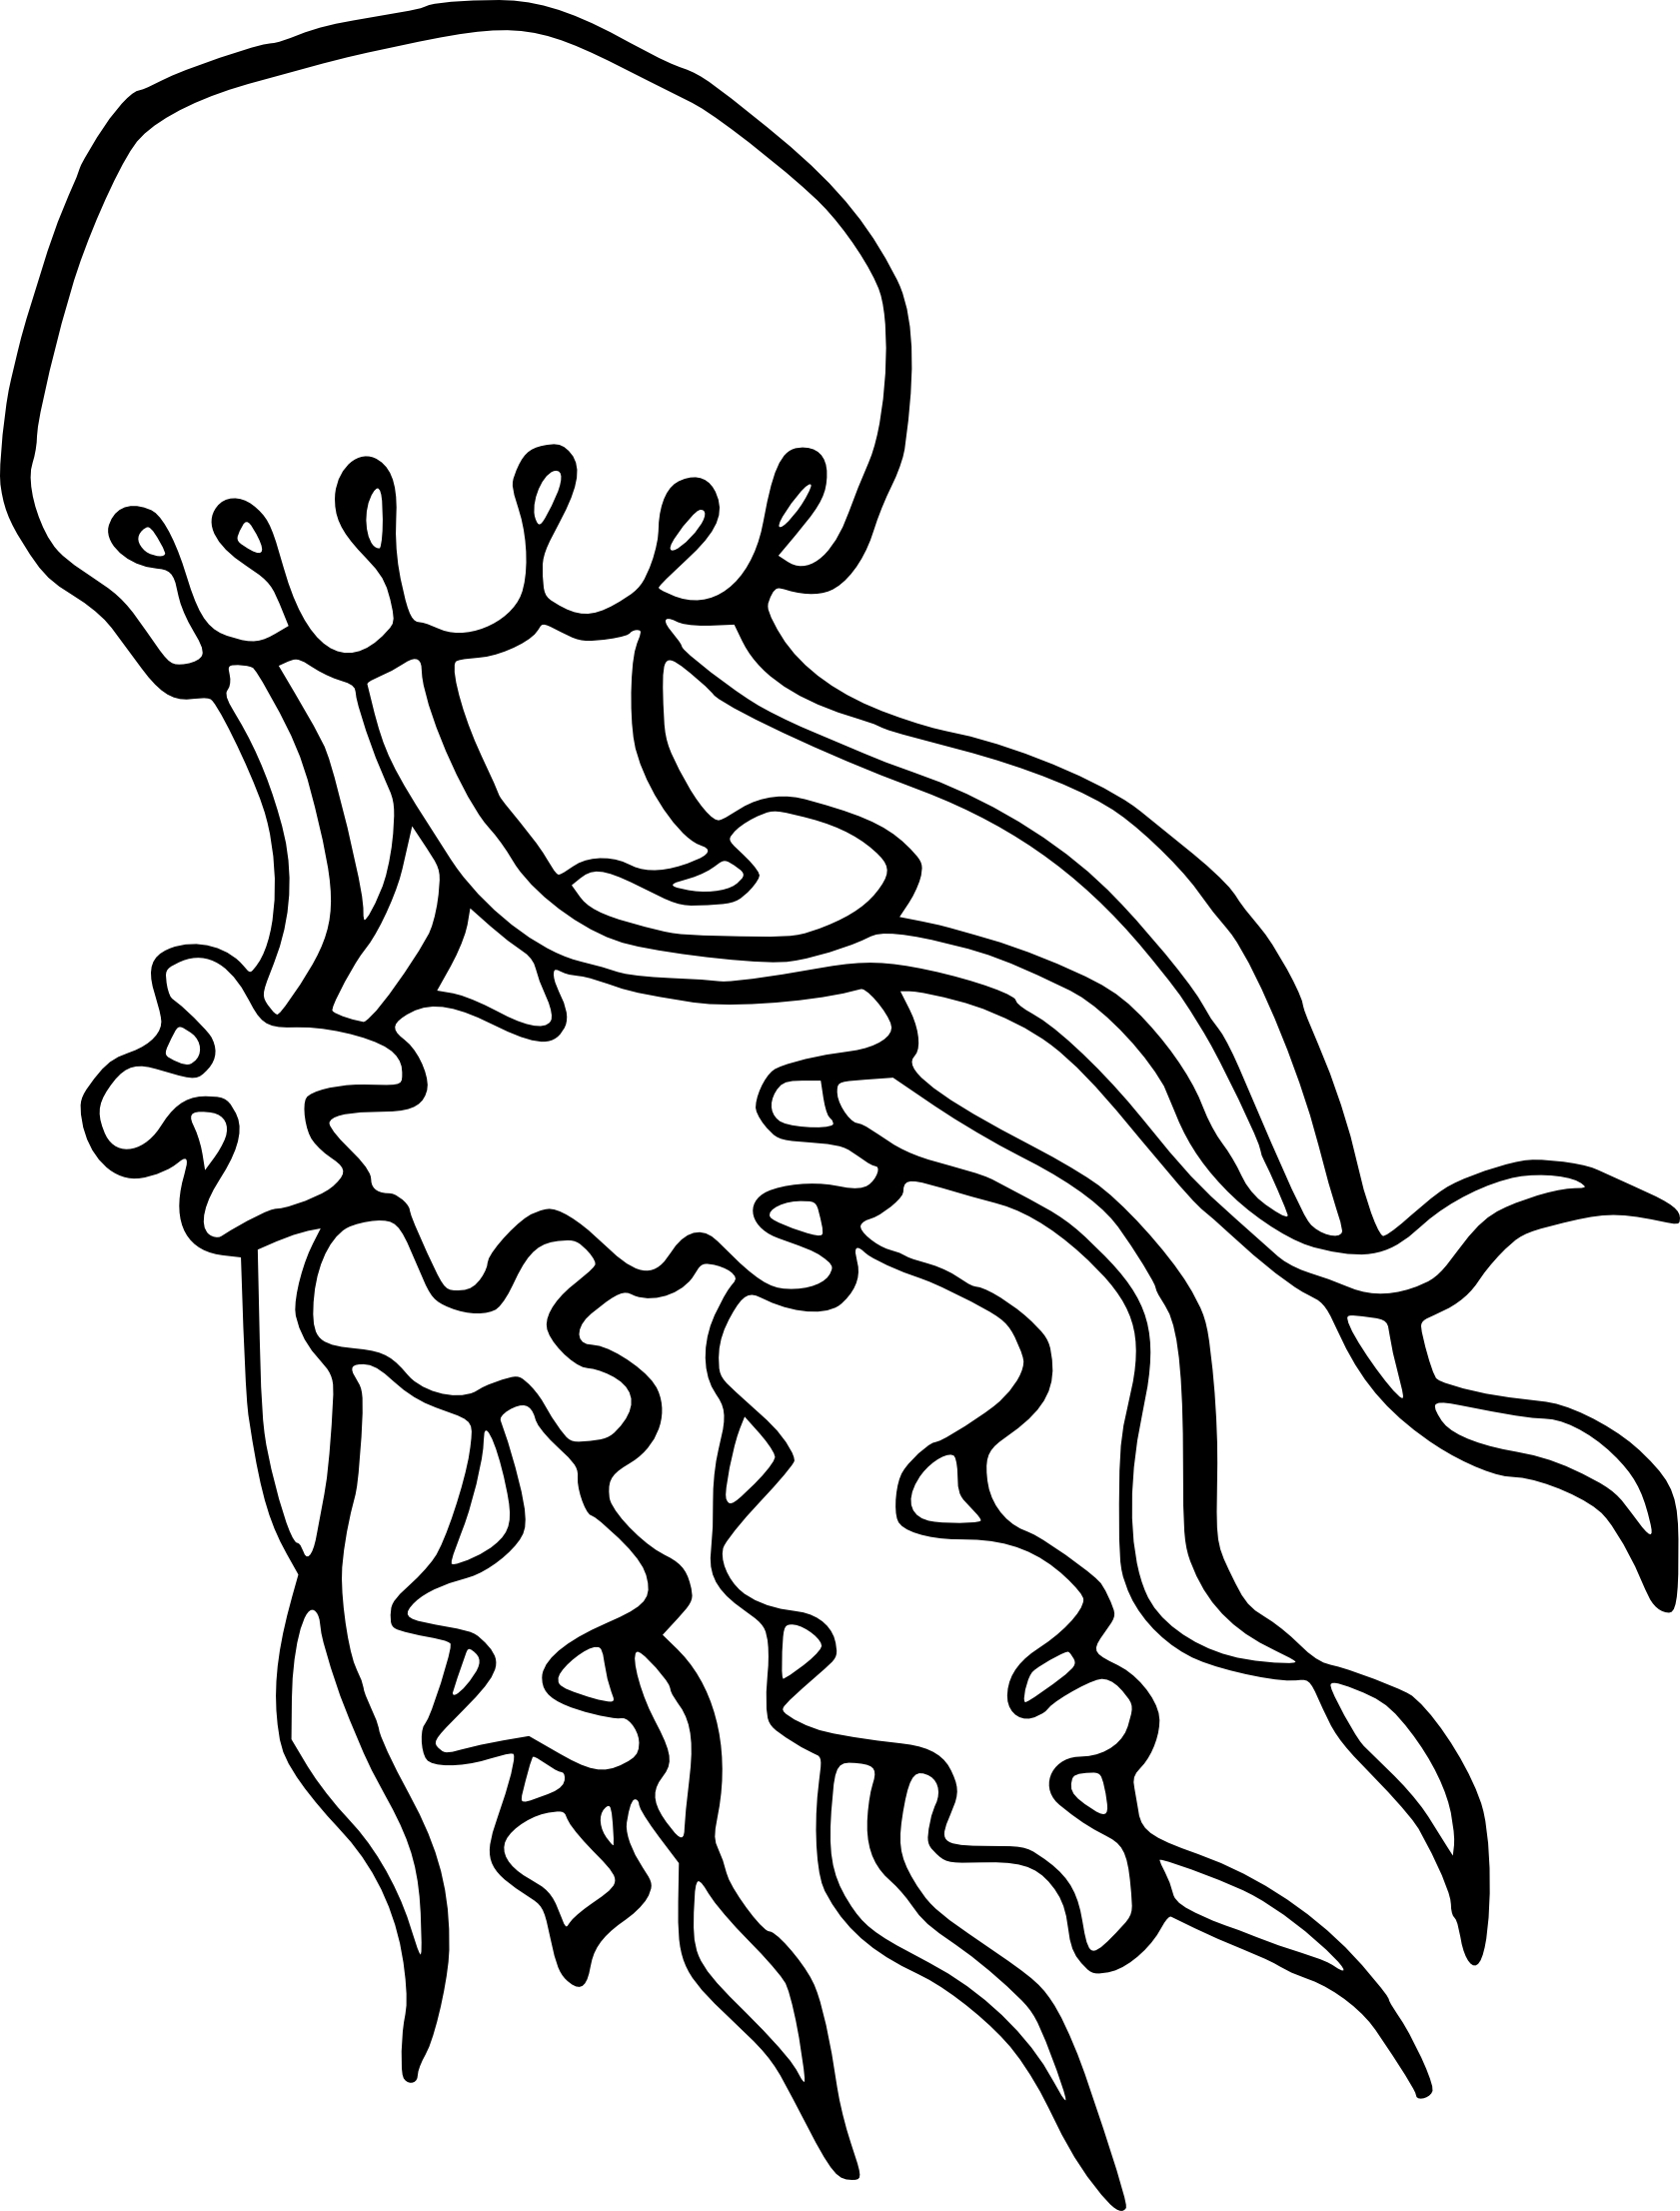 Disegno di Medusa da colorare